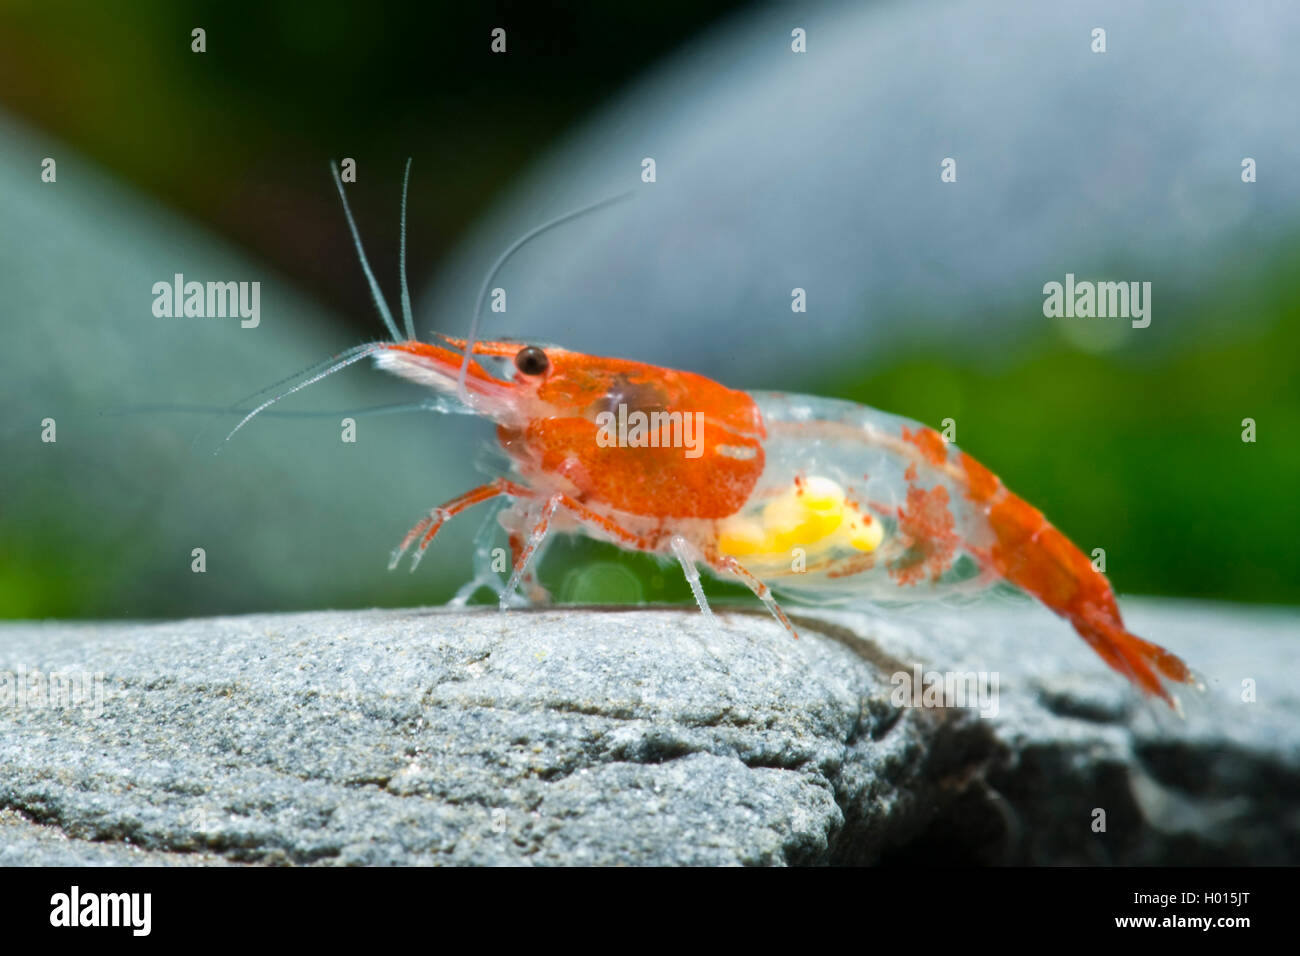 Shrimp neocaridina red cherry e imágenes alta - Alamy